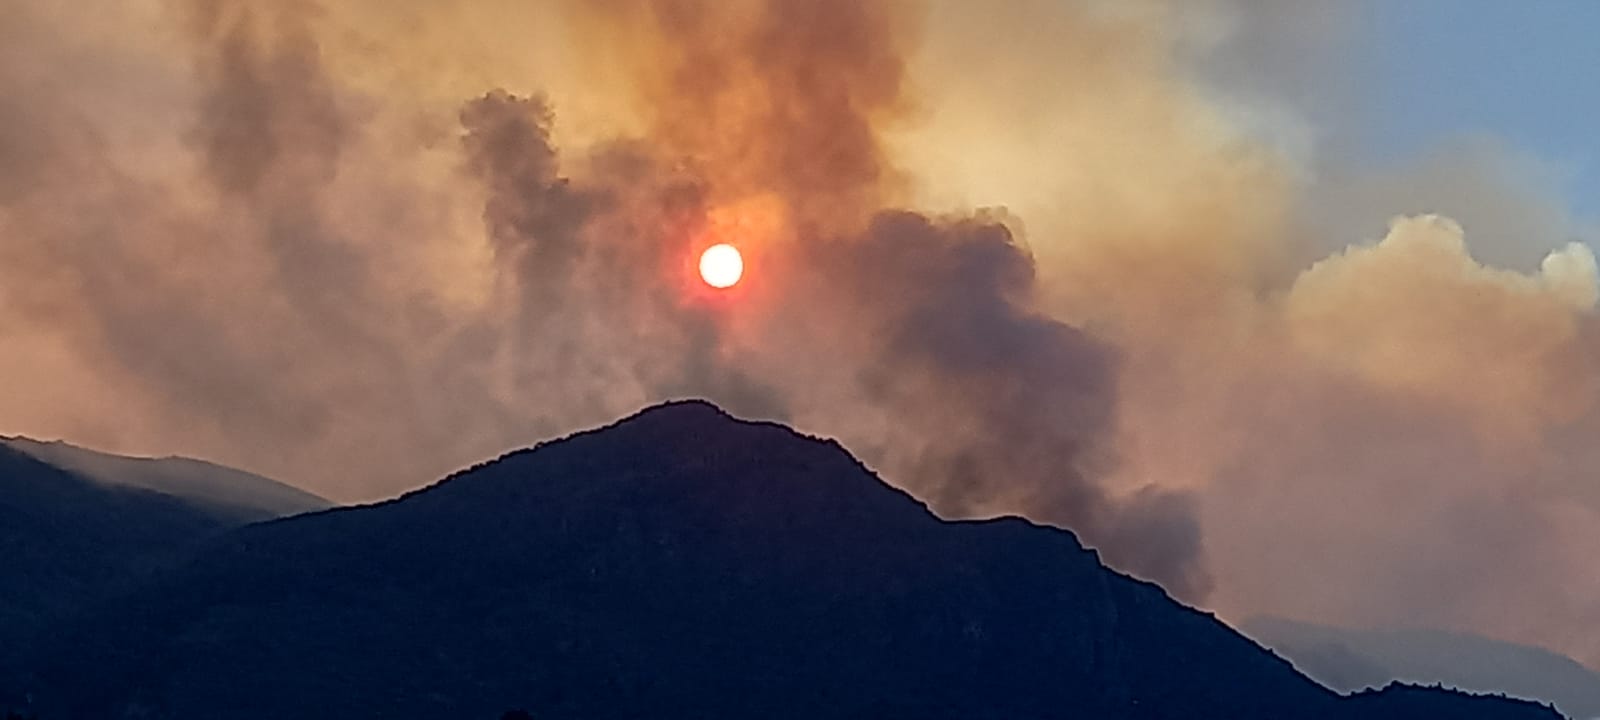 El fuego alcanzó ayer la cumbre del cerro Santa Elena, que divide el lago Steffen del río Manso. (foto gentileza)